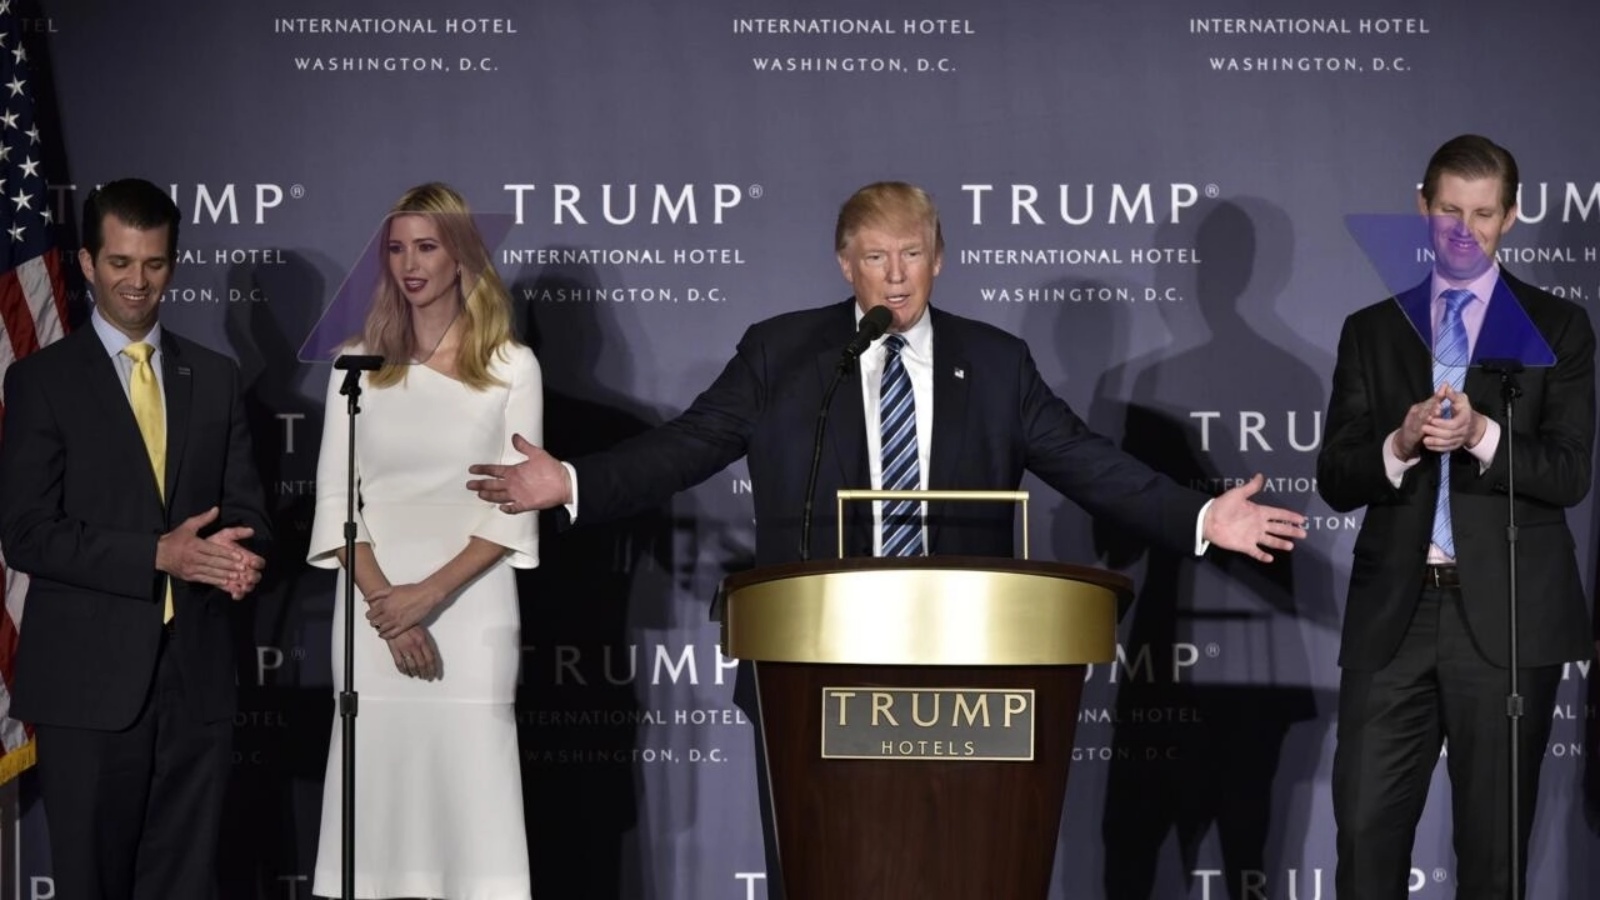 الرئيس السابق دونالد ترامب وثلاثة من أبنائه دونالد جونيور وإيريك وزوجته إيفانكا في افتتاح فندق له في واشنطن - اغلق في وقت لاحق -، في 26 أكتوبر 2016 